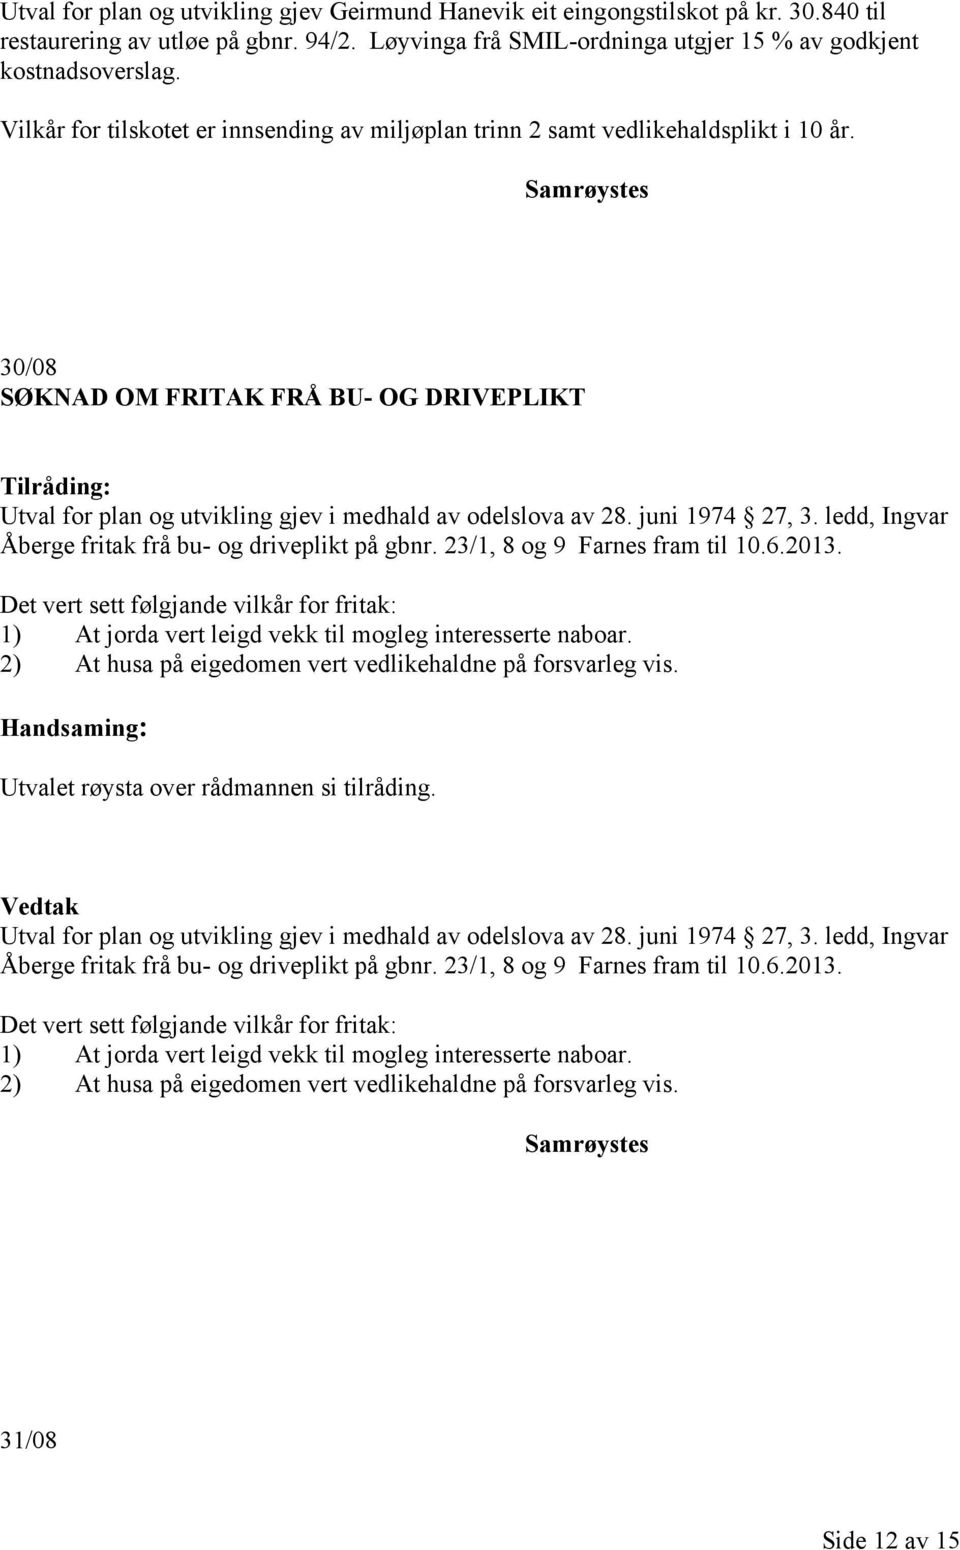 juni 1974 27, 3. ledd, Ingvar Åberge fritak frå bu- og driveplikt på gbnr. 23/1, 8 og 9 Farnes fram til 10.6.2013.